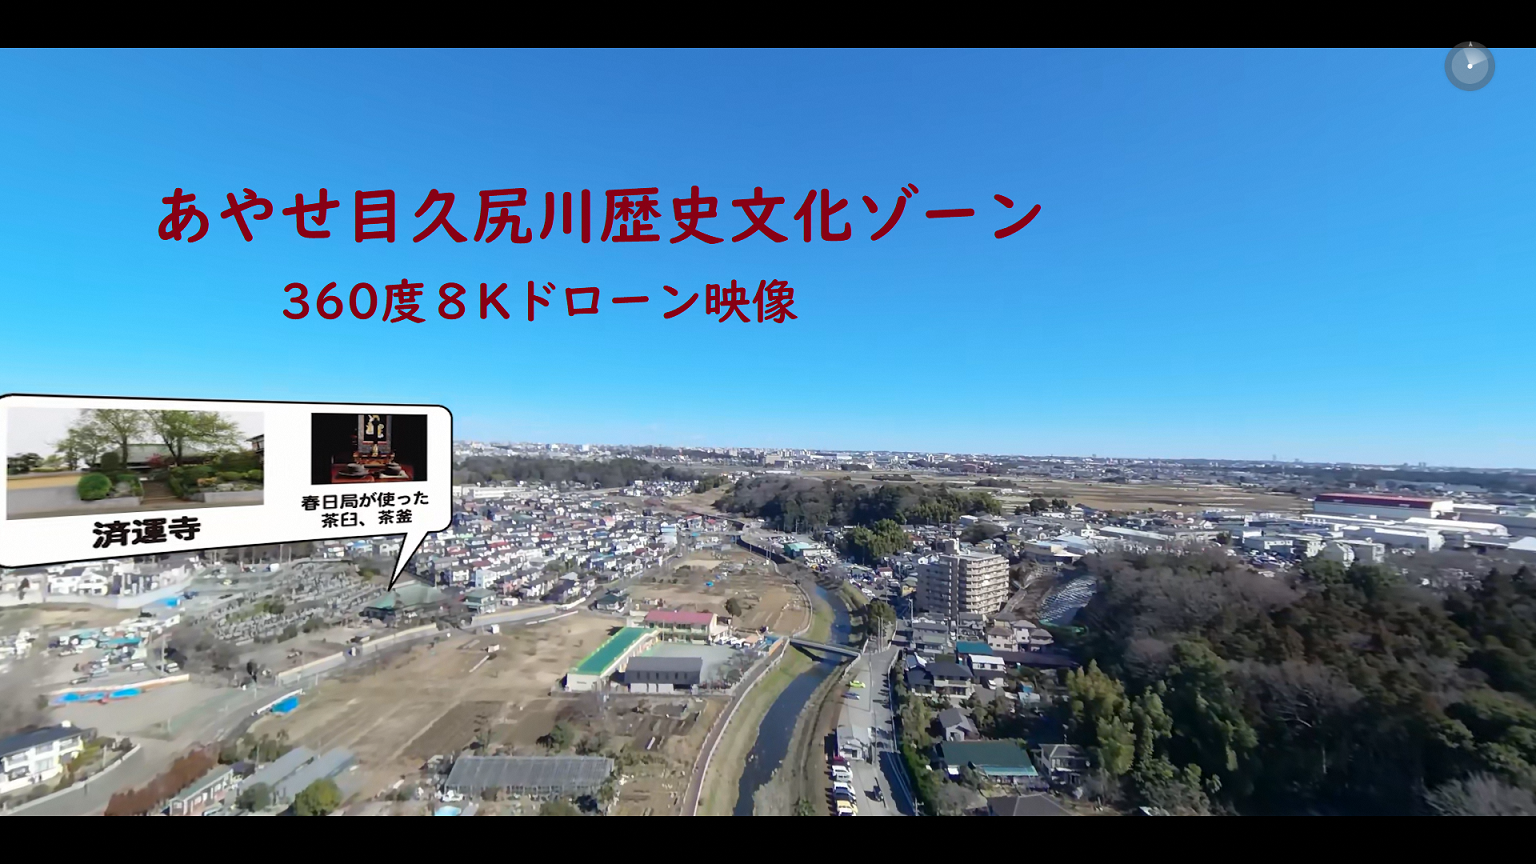 あやせ目久尻川歴史文化ゾーン 360度8Kドローン映像の文字とドローンで撮影した綾瀬市内の空撮写真